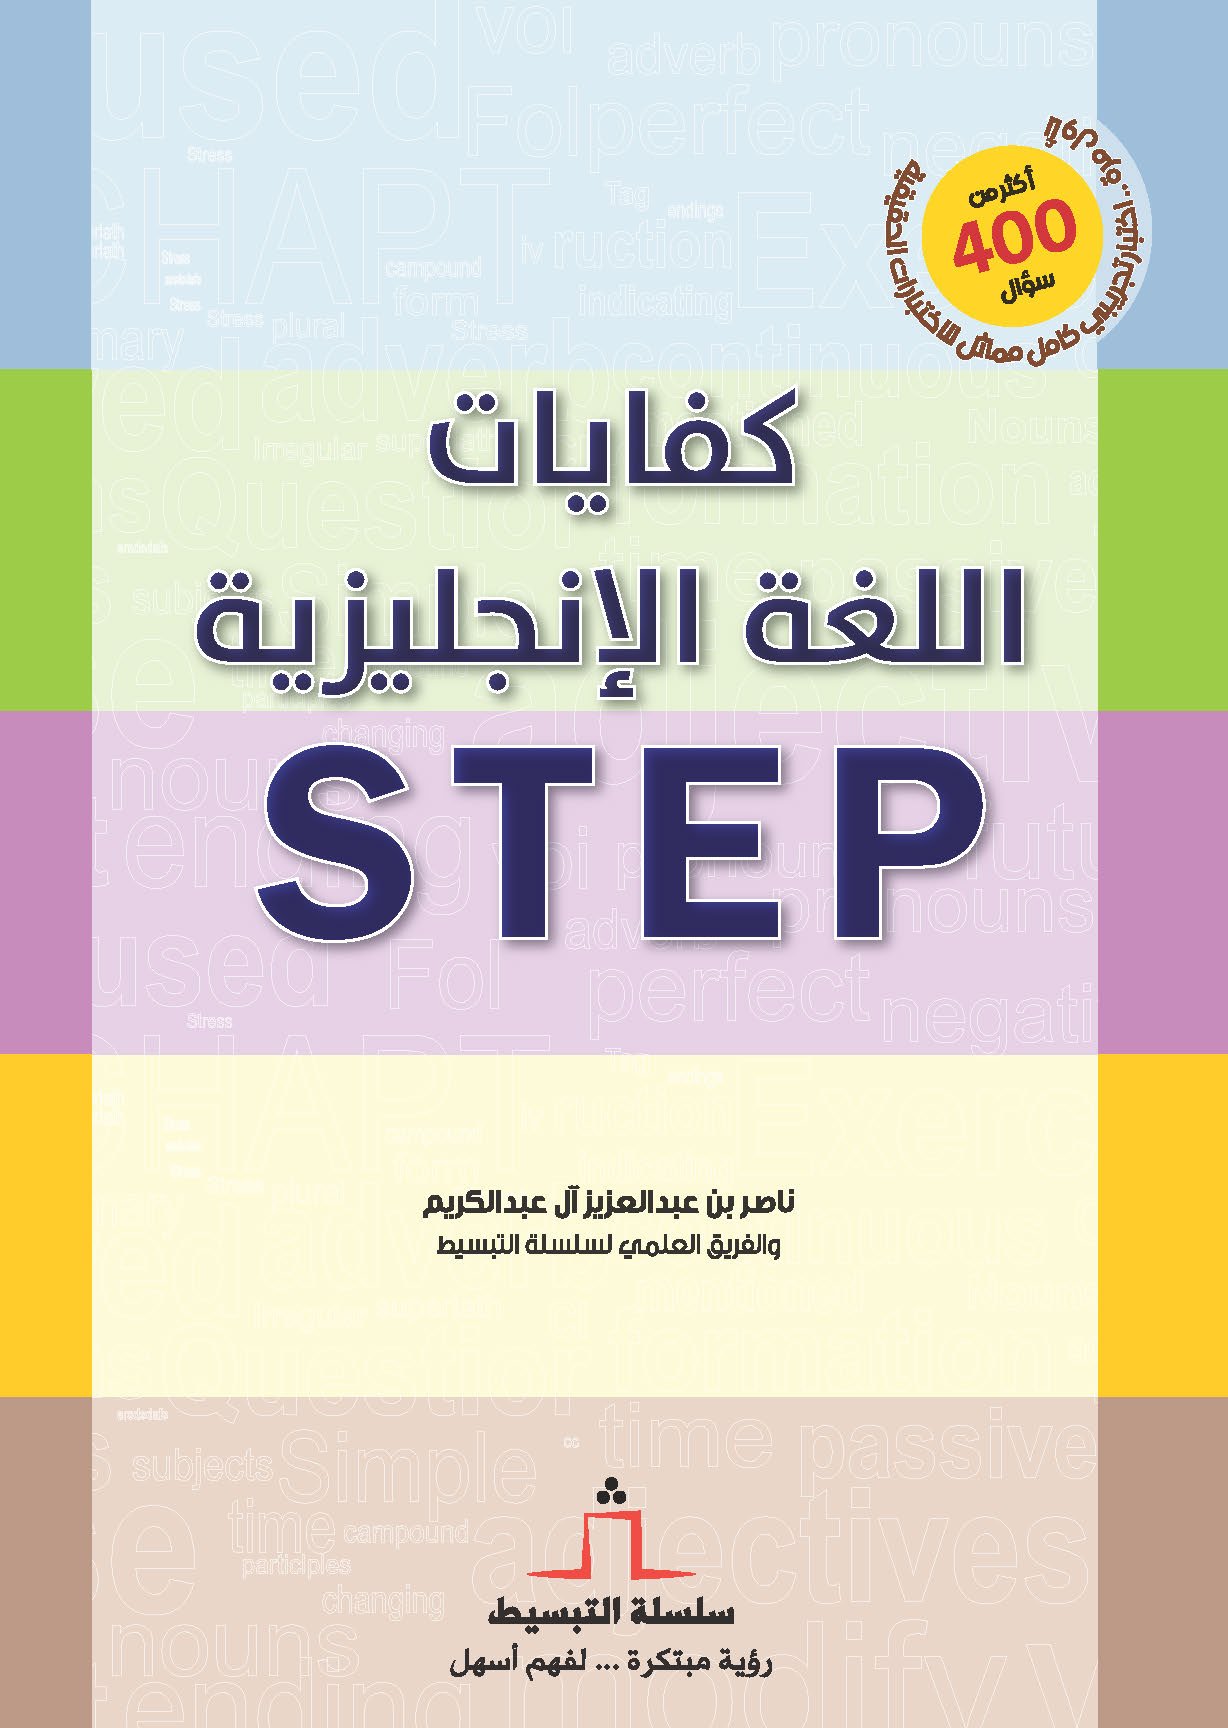 دار الحرف On Twitter من إصداراتنا Step لـ أ ناصر العبدالكريم ضمن سلسلة التبسيط متوفر في المكتبات وللتحميل Https T Co R1mxgq2fri Https T Co 2mozcekjgx